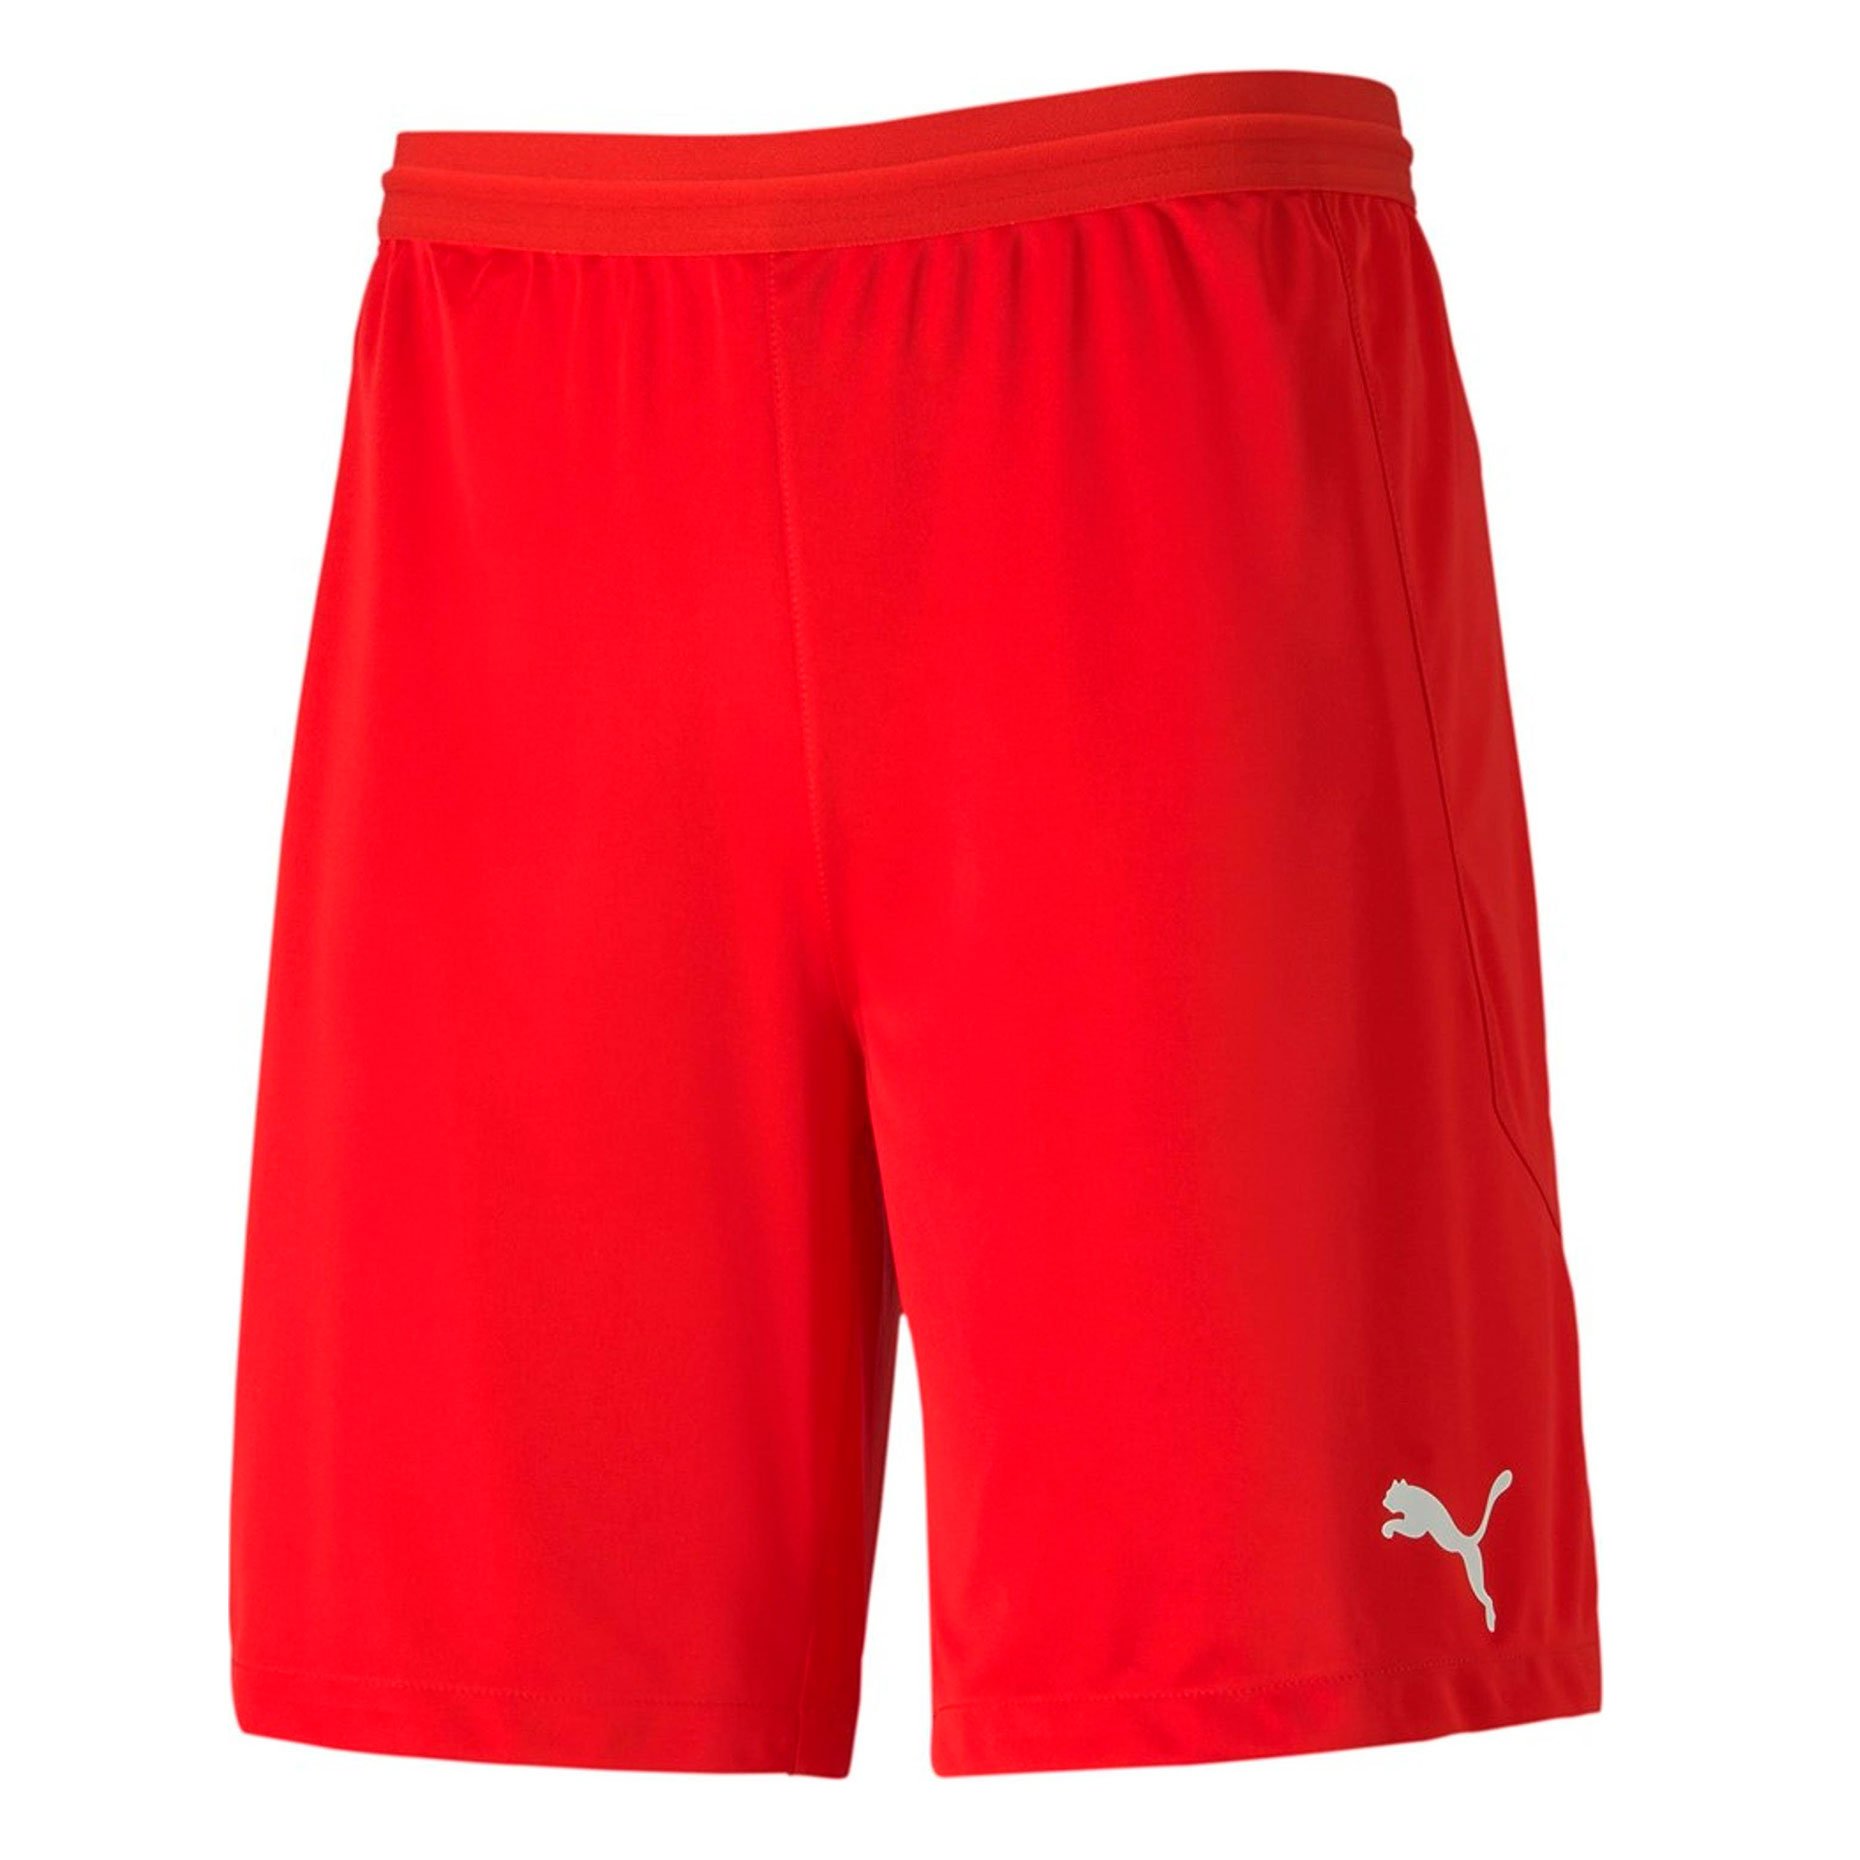 Шорты игровые Puma teamFINAL 21 knit Shorts (красные)